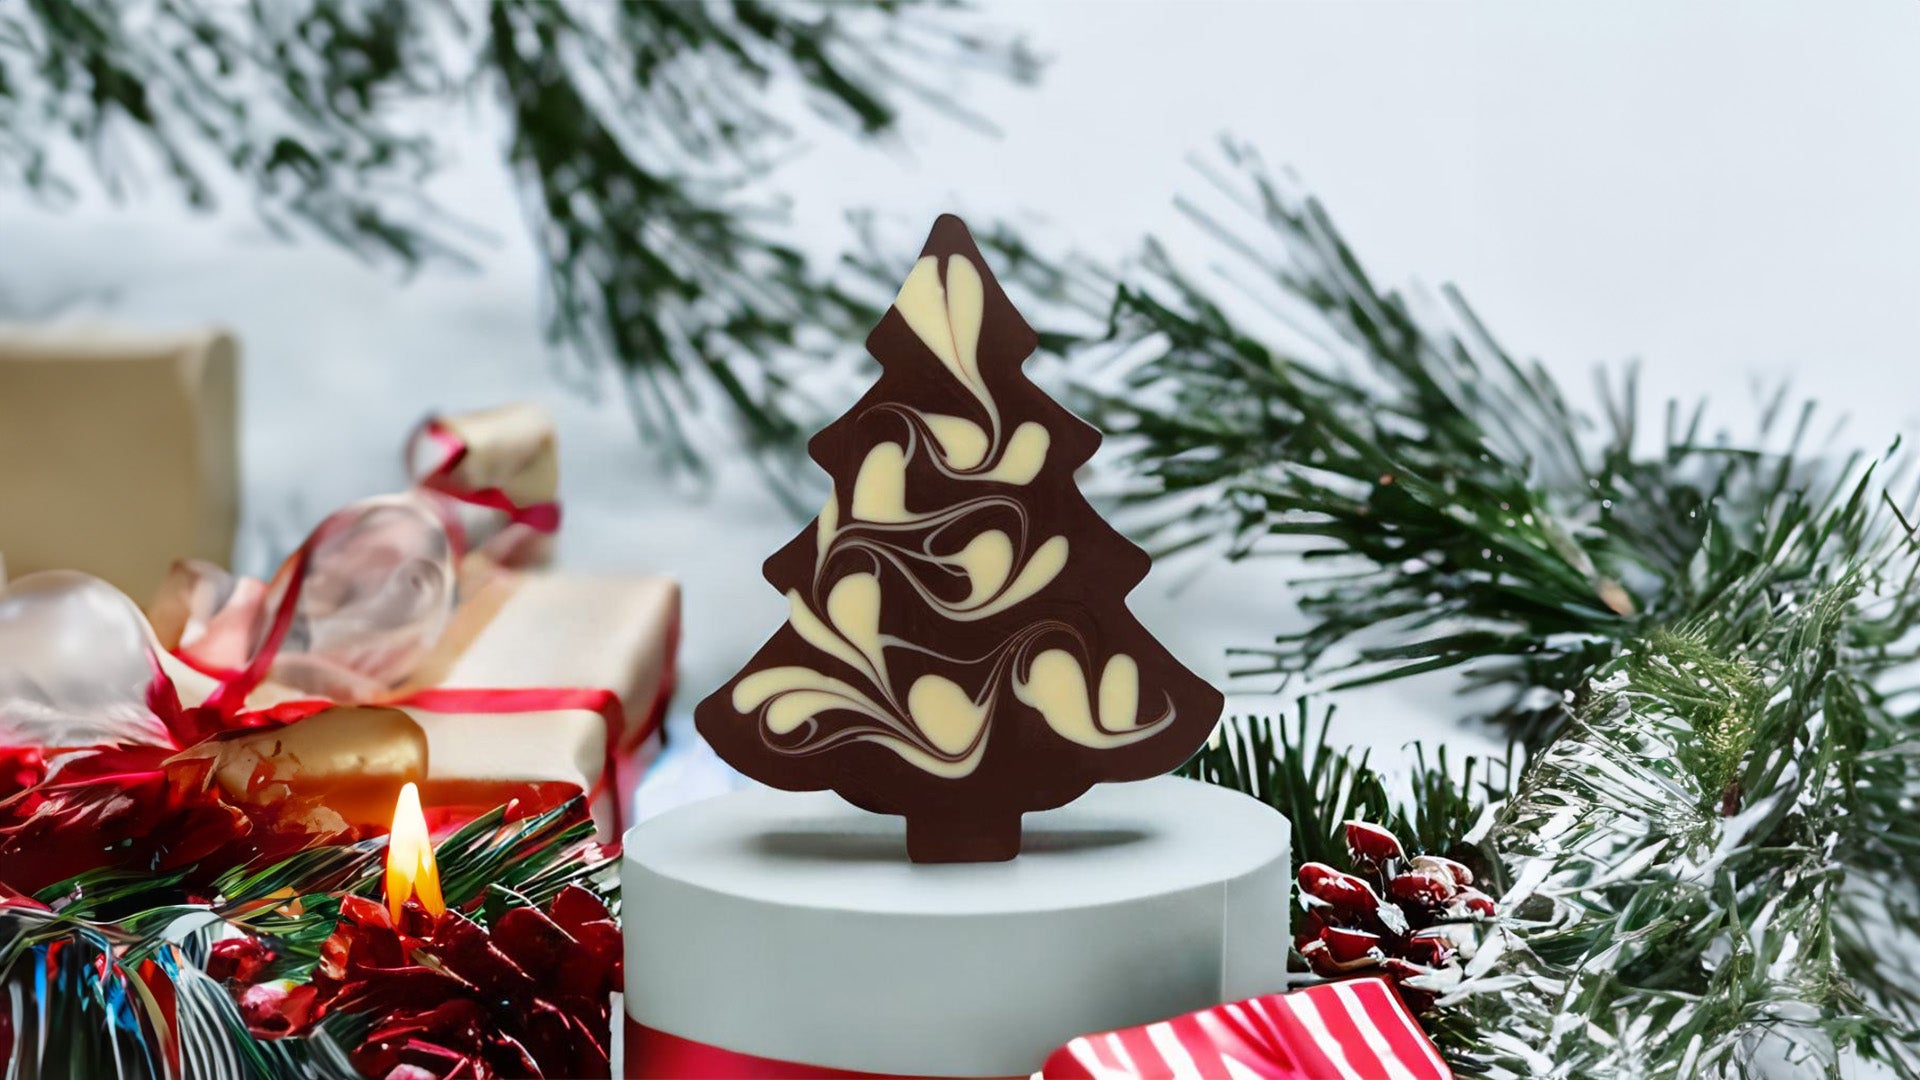 Einblick in die handwerkliche Herstellung von Schokoladentafeln von KSC - KILIAN SCHOEN CHOCOLATES EST. 2019